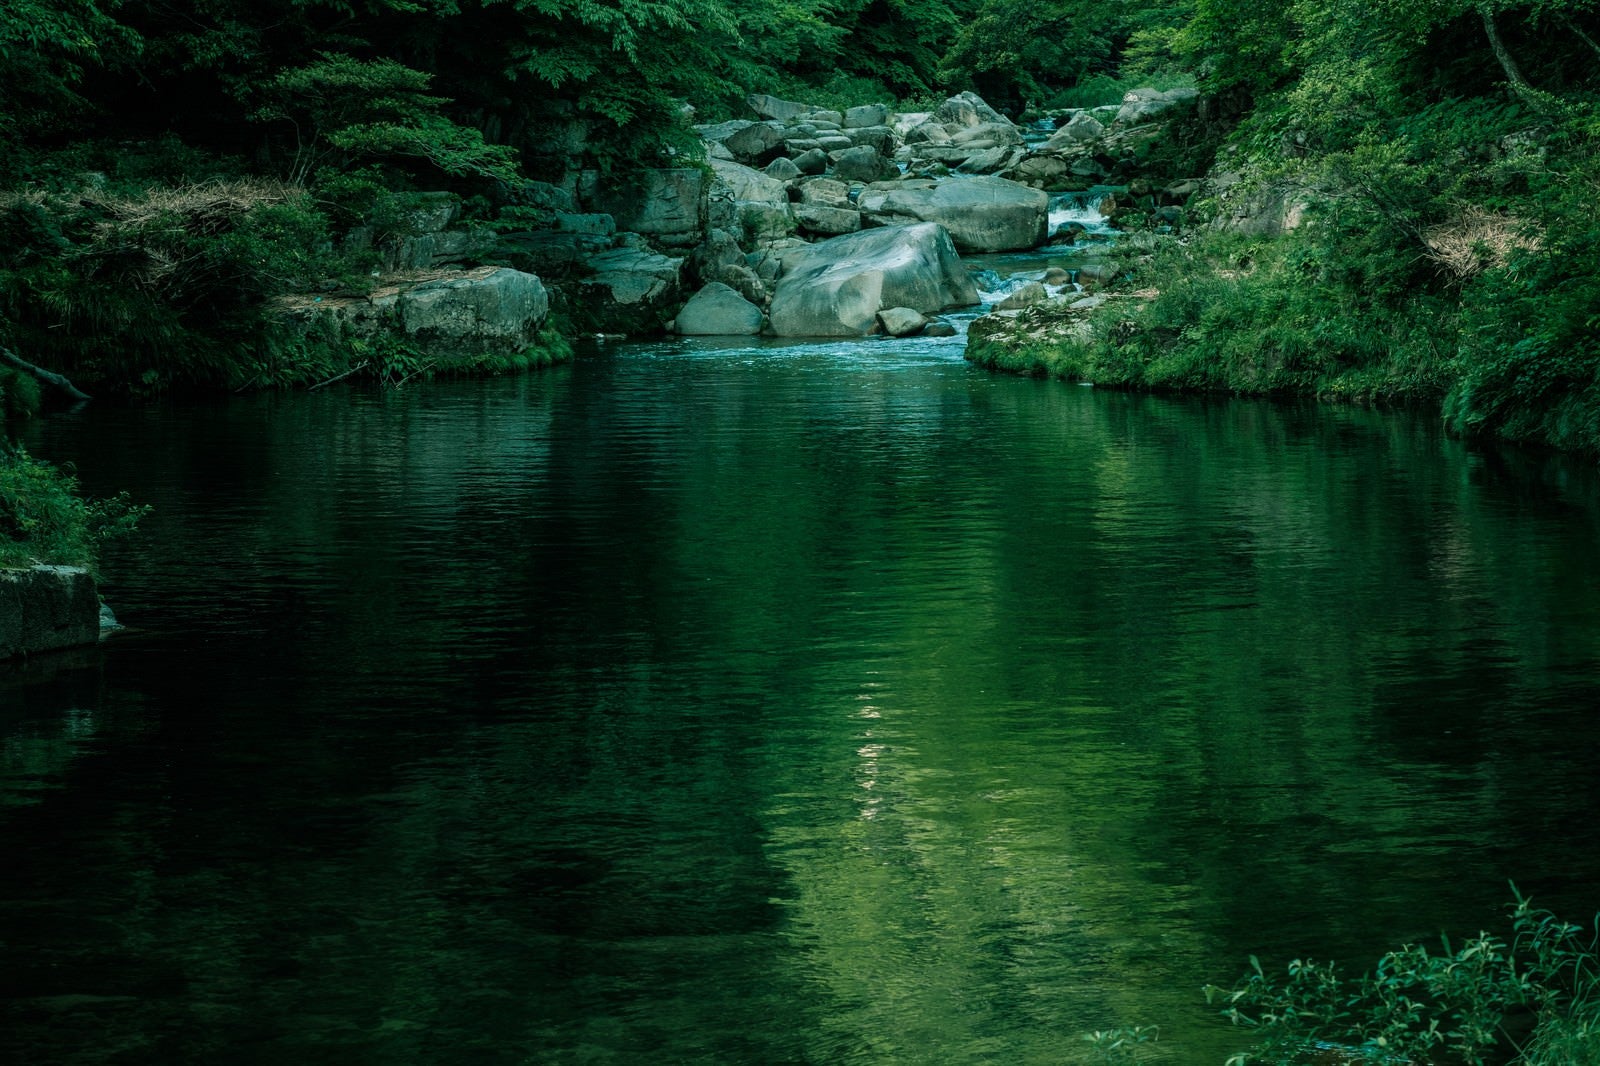 「静寂な奥津渓の景観」の写真